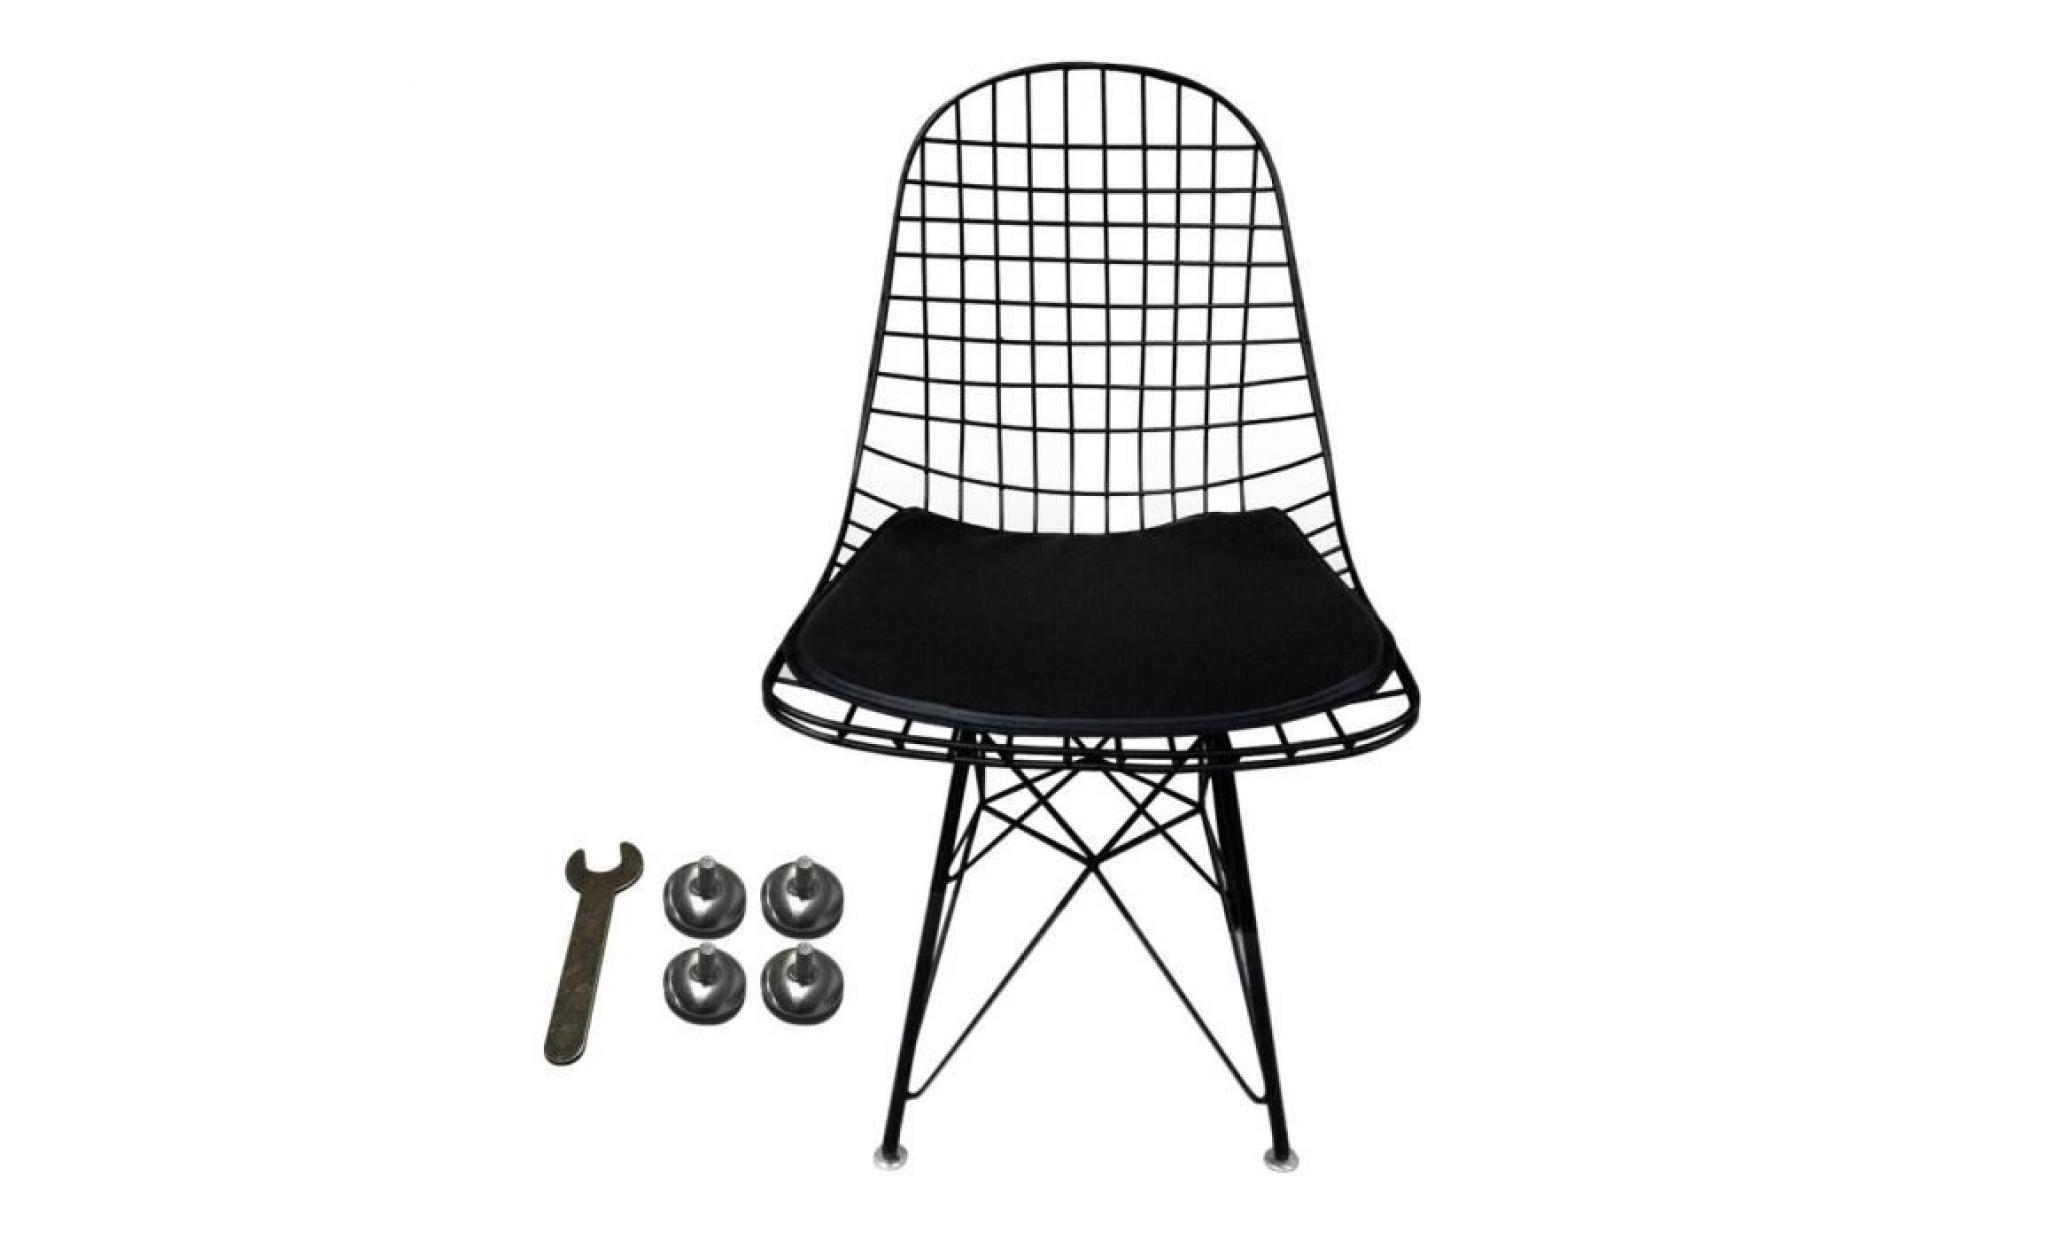 chaise eames inspiré confortable noir métal treillis métallique chaise À manger intérieur chaise lounge restaurant bureau maison déc